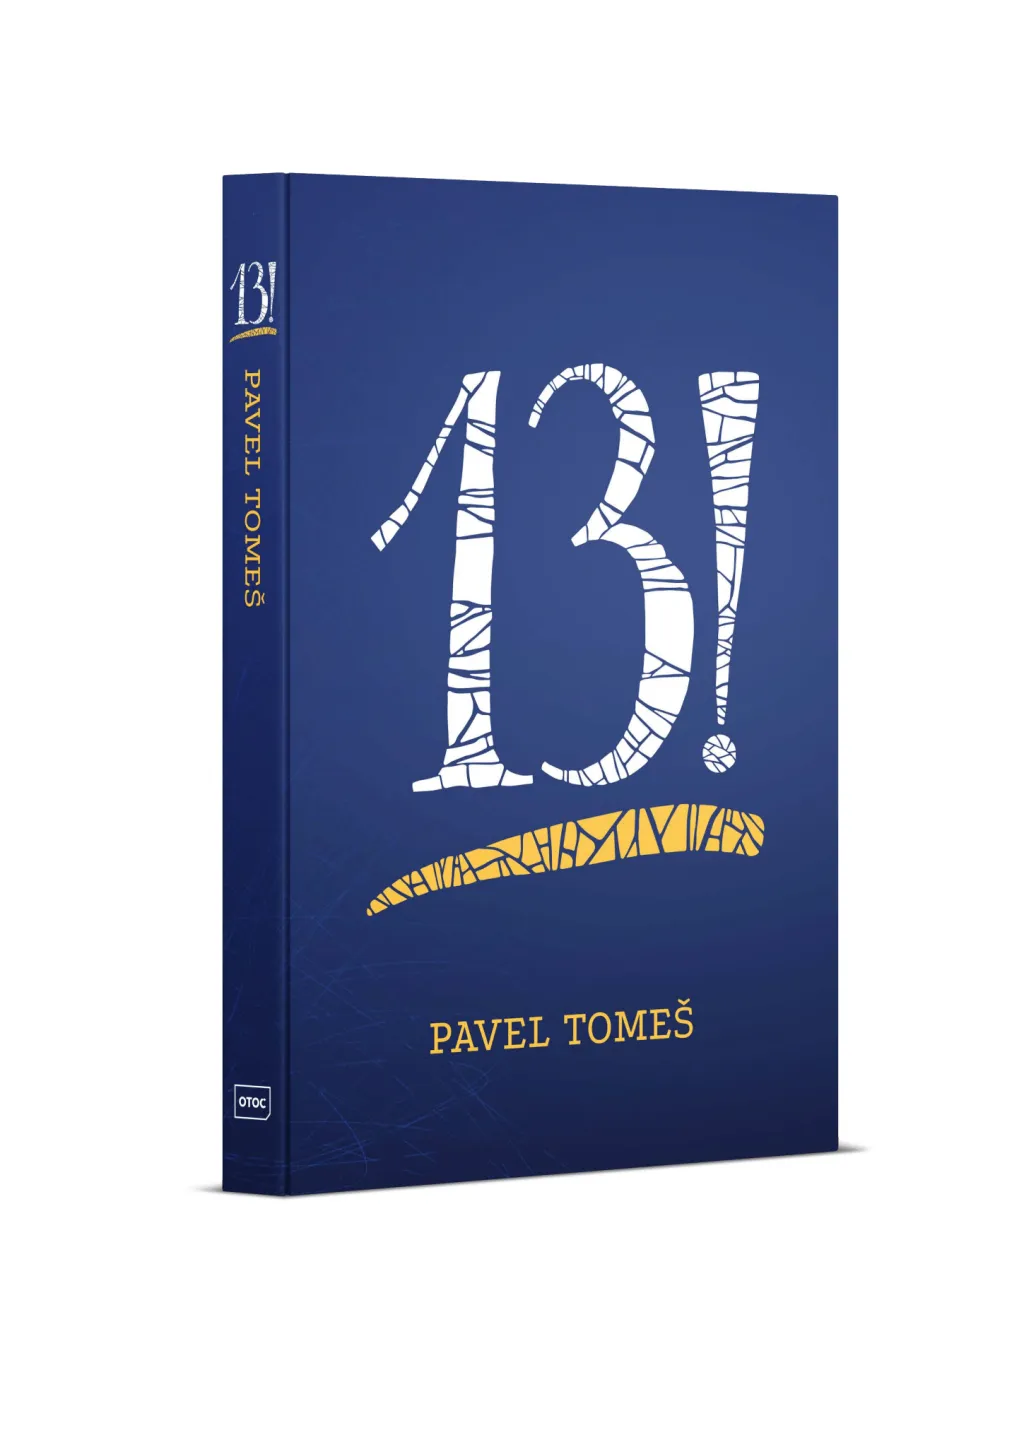 Spisovatel a stand-up komik Pavel Tomeš napsal povídkovou sbírku 13! (čti „třináct faktoriál“). Postavy třinácti příběhů se dostávají do neobvyklých situací, které ne vždy dopadnou úplně dobře